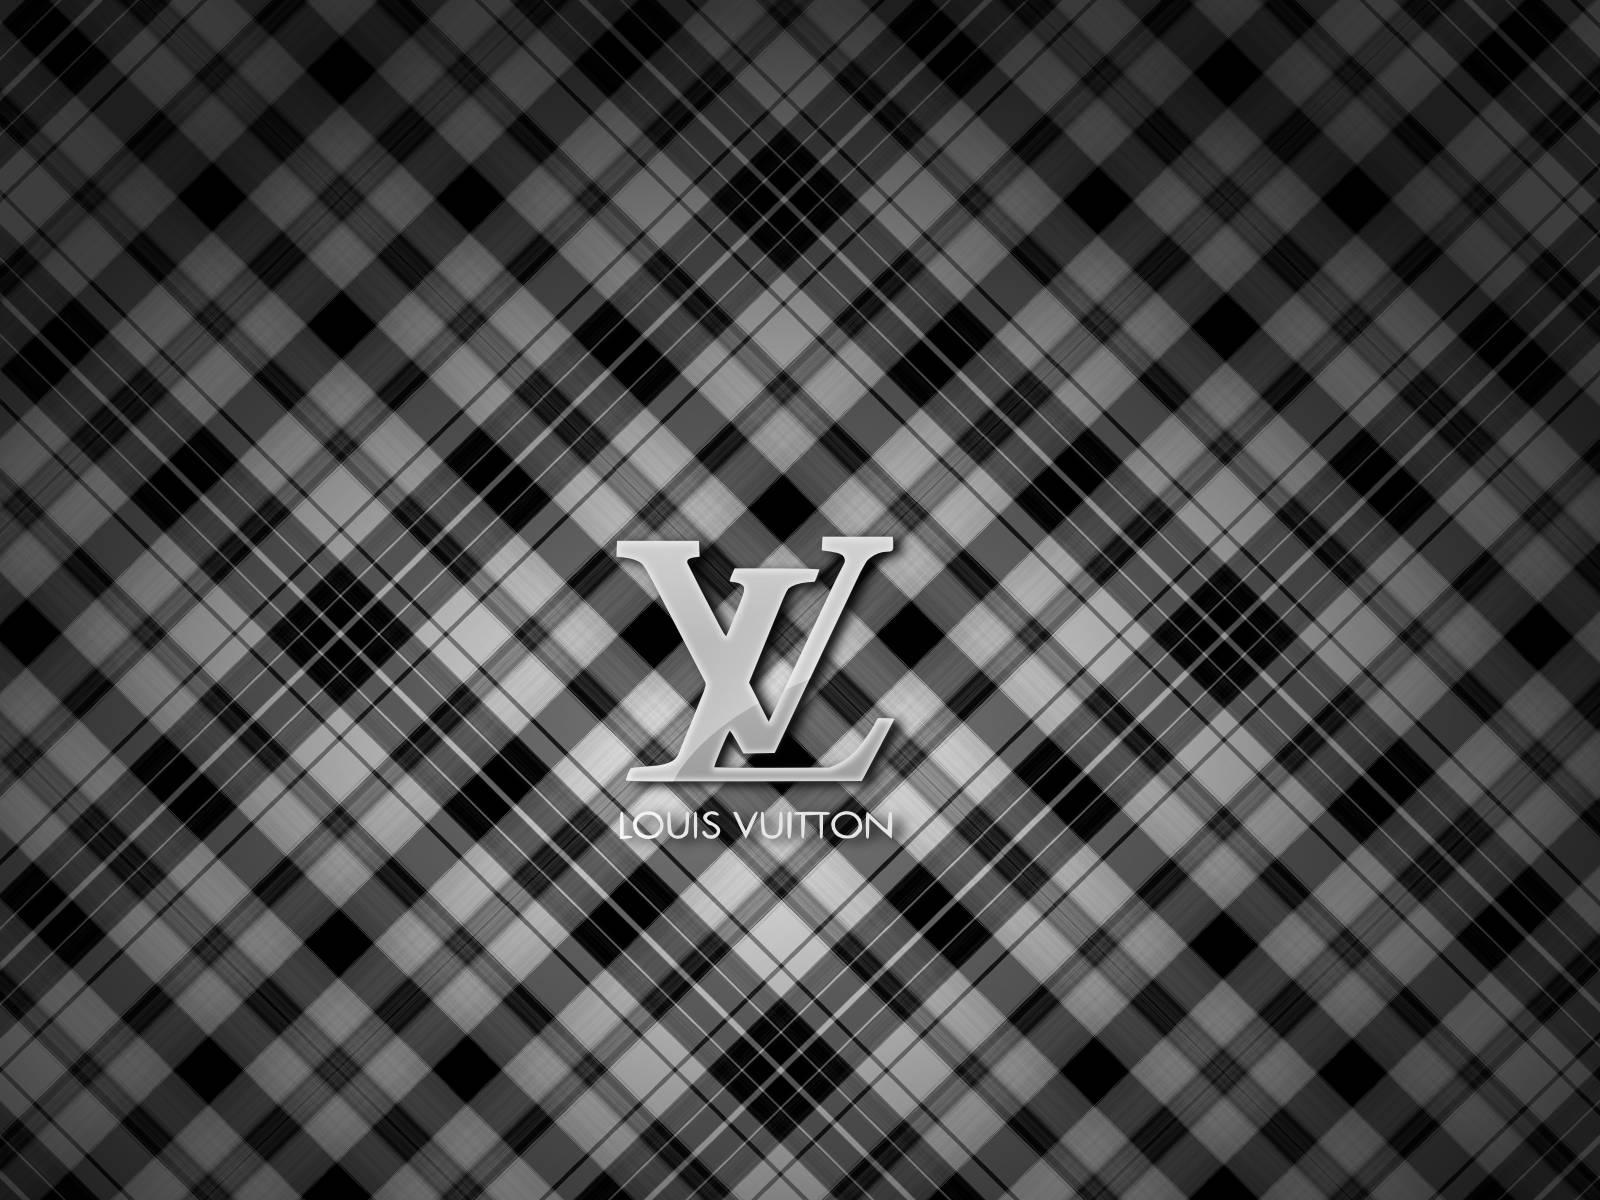 Download Fond Cran Louis Vuitton Taille Elle Wallpaper 1600x1200